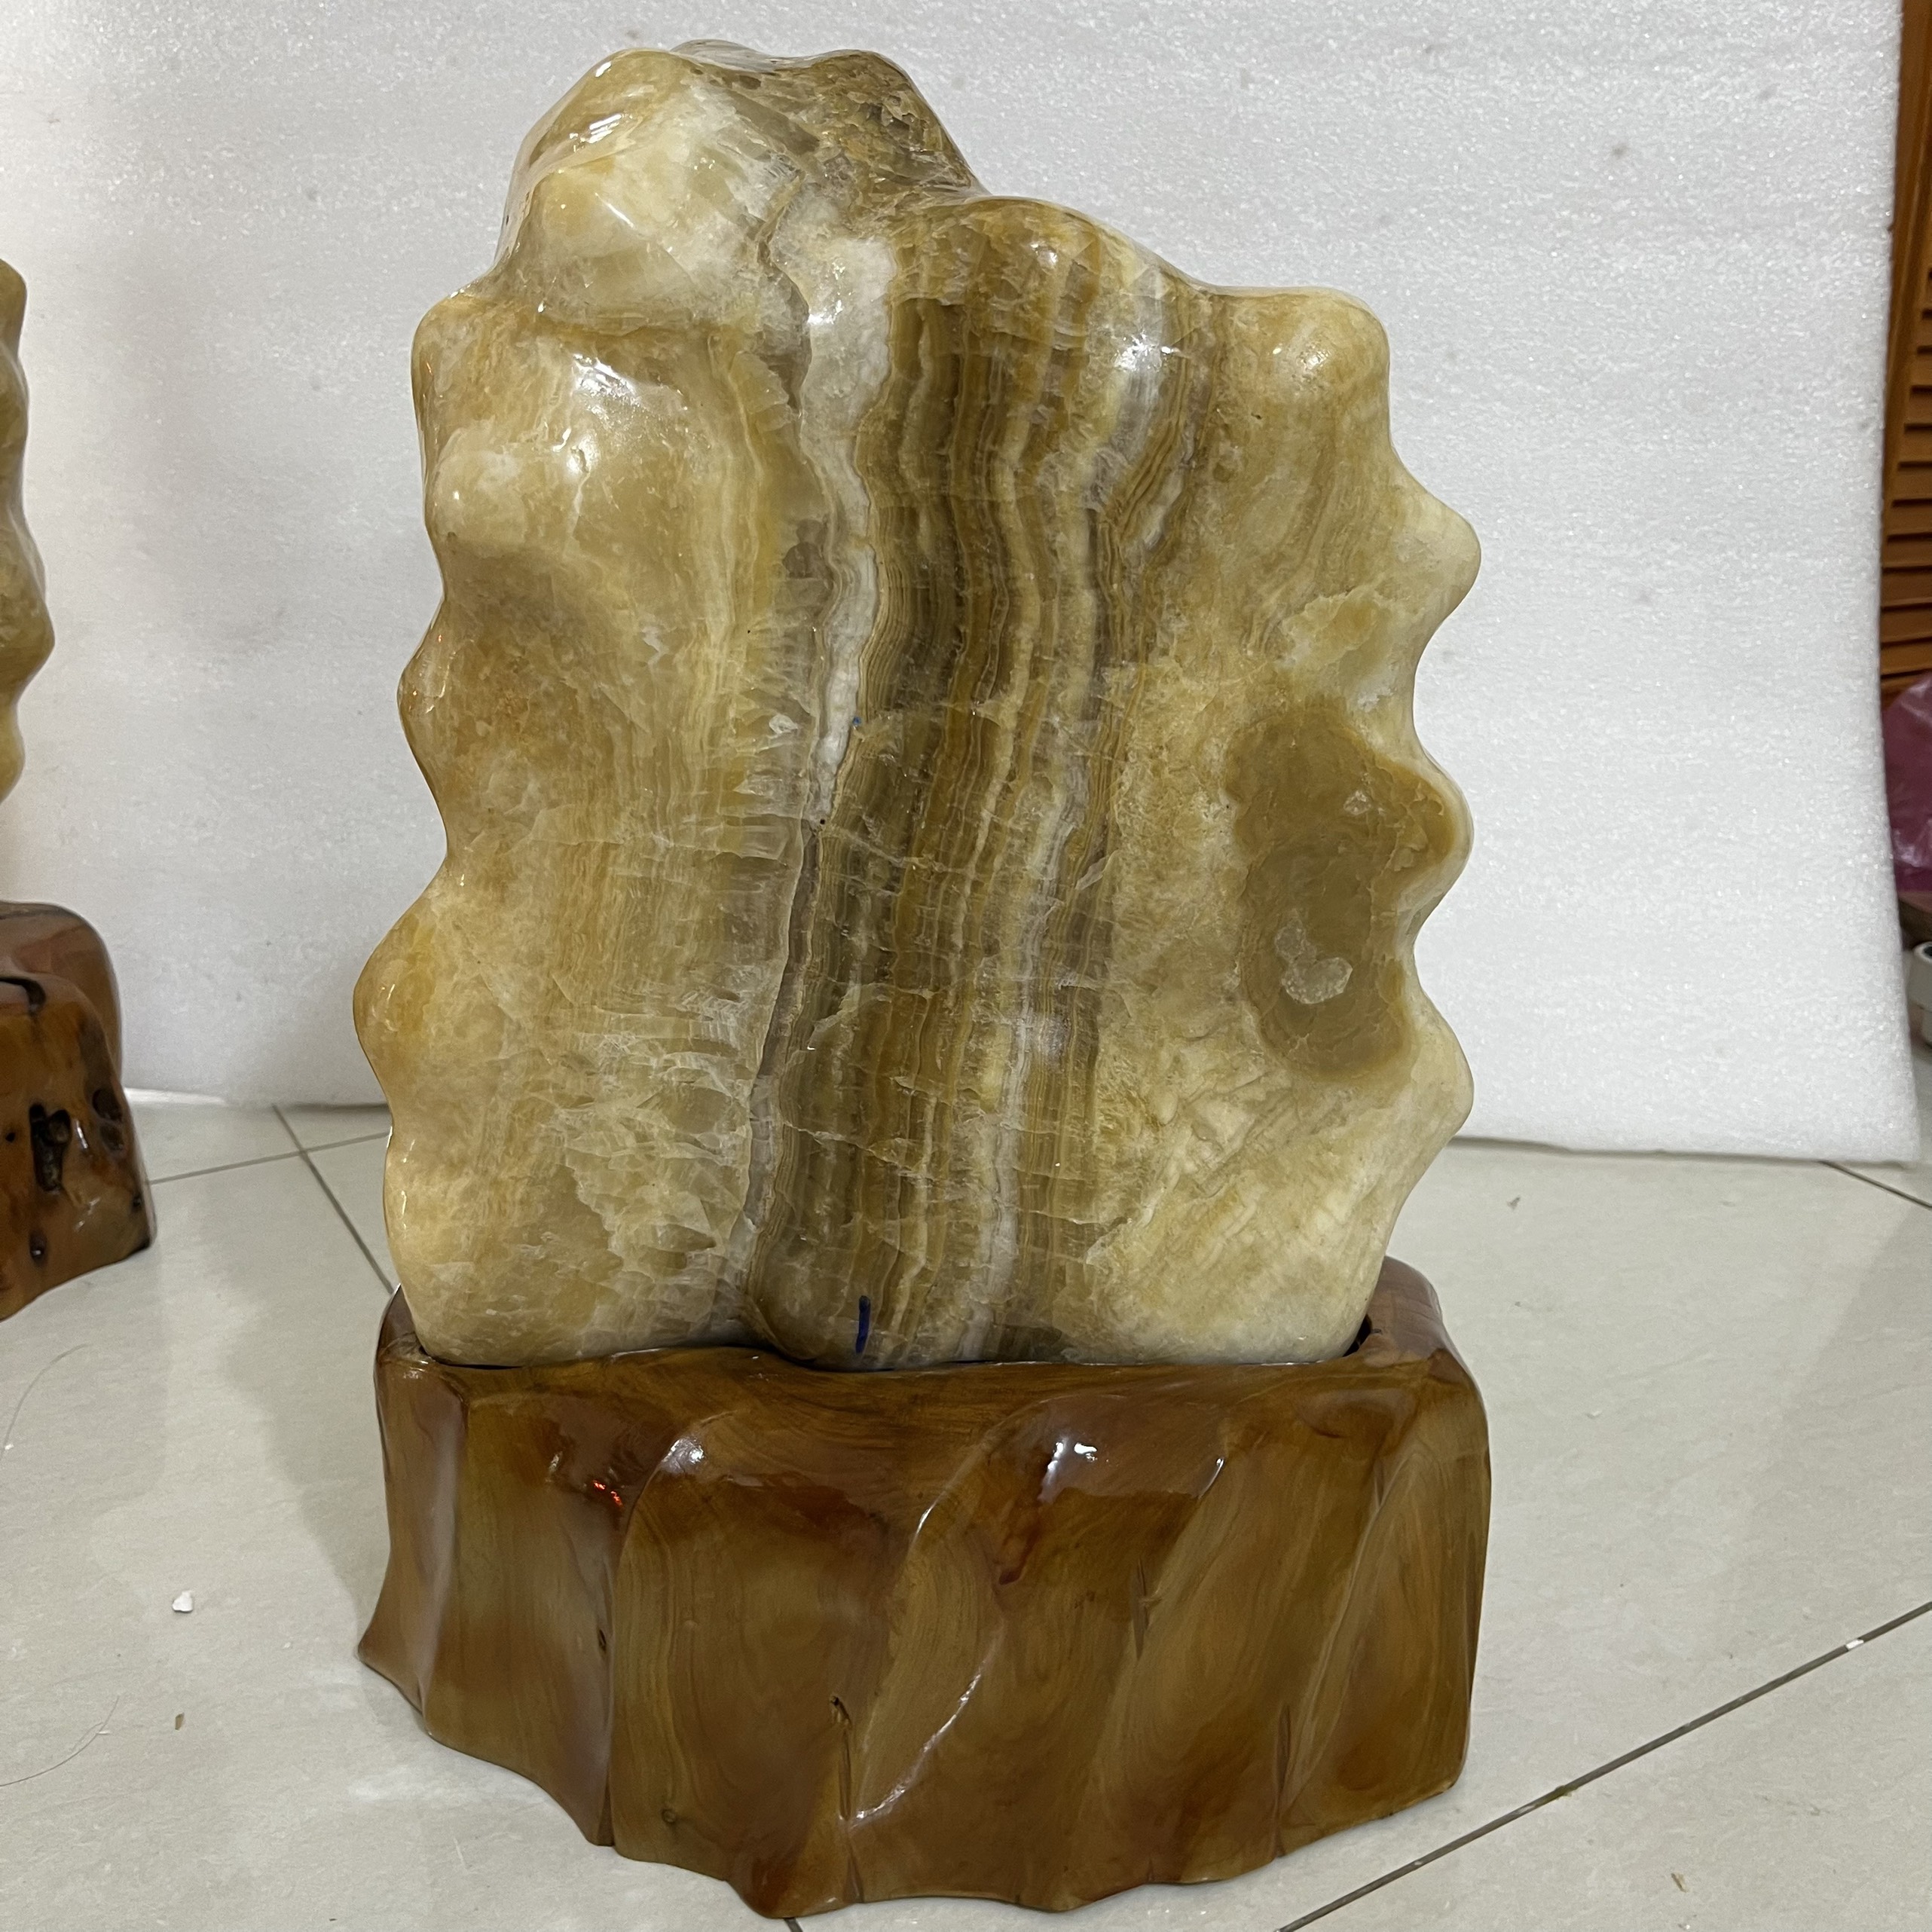 Đá trấn trạch, đá phong thủy cao 50cm, nặng 25 kg cho mệnh Kim và Thổ